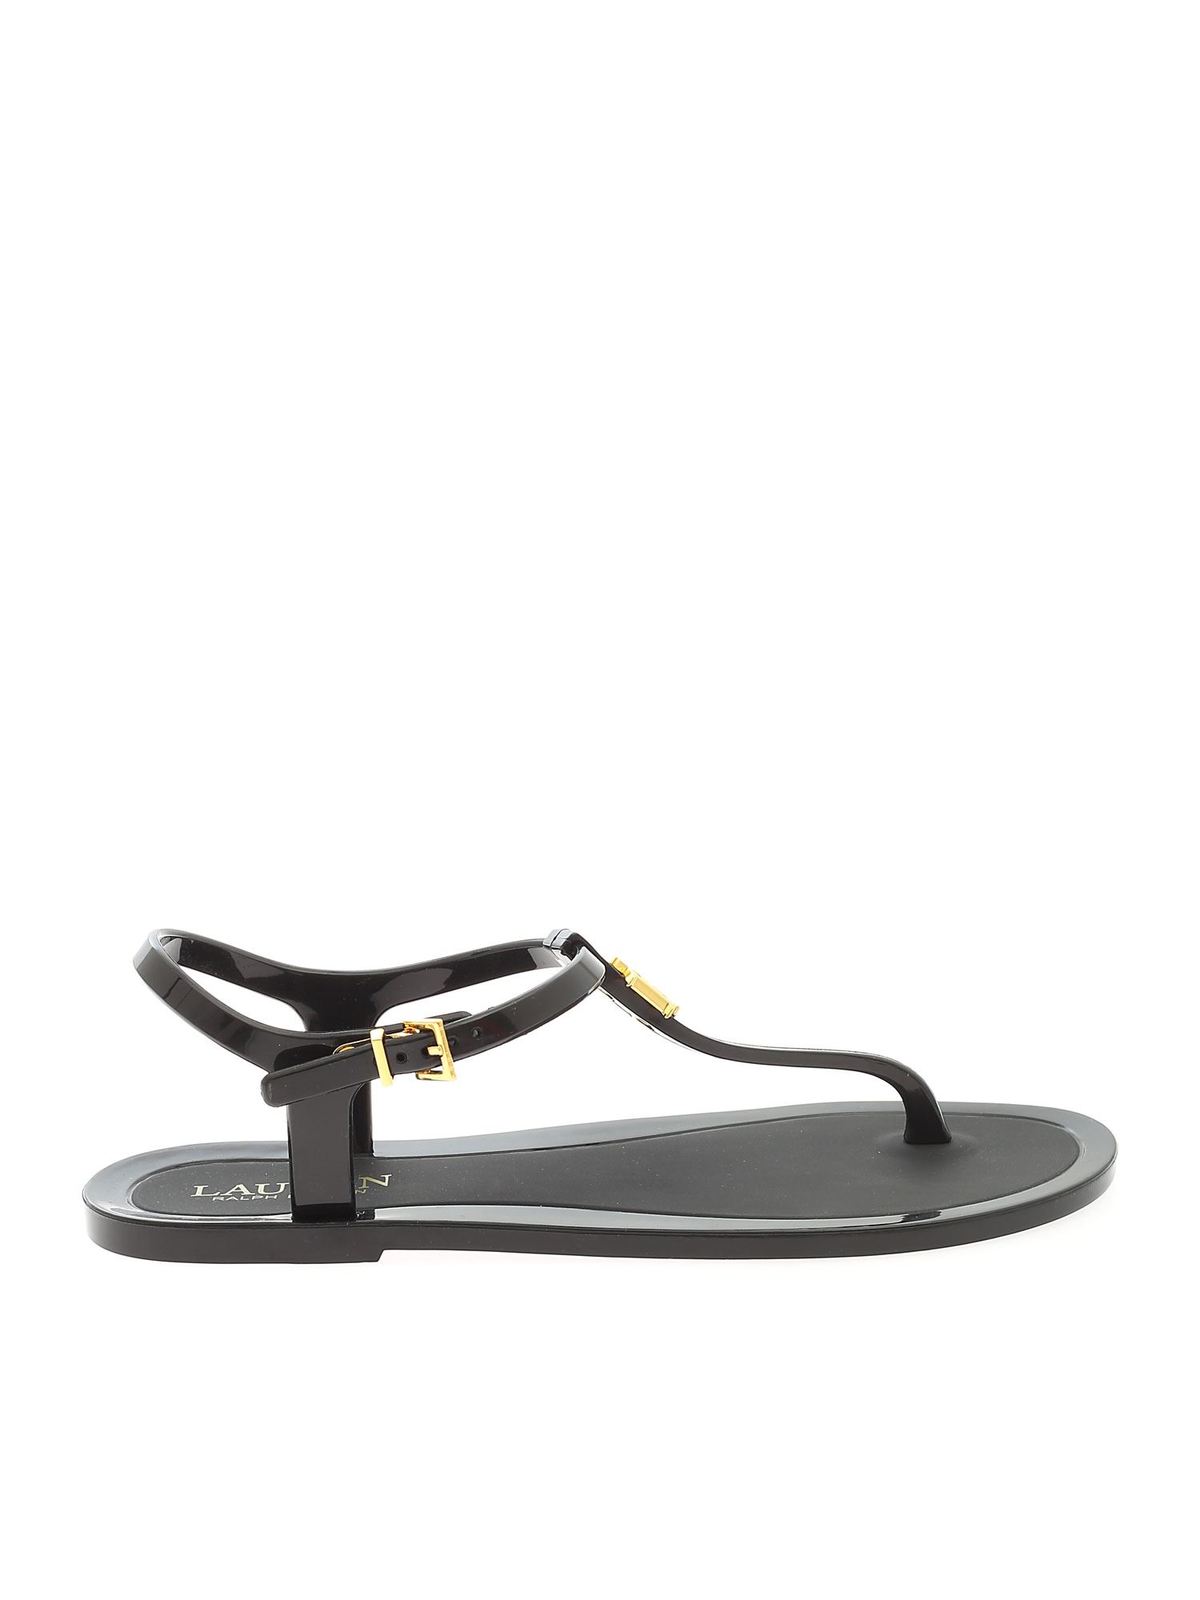 Sandals Lauren Ralph Lauren - Thong sandals in black - 802784684001